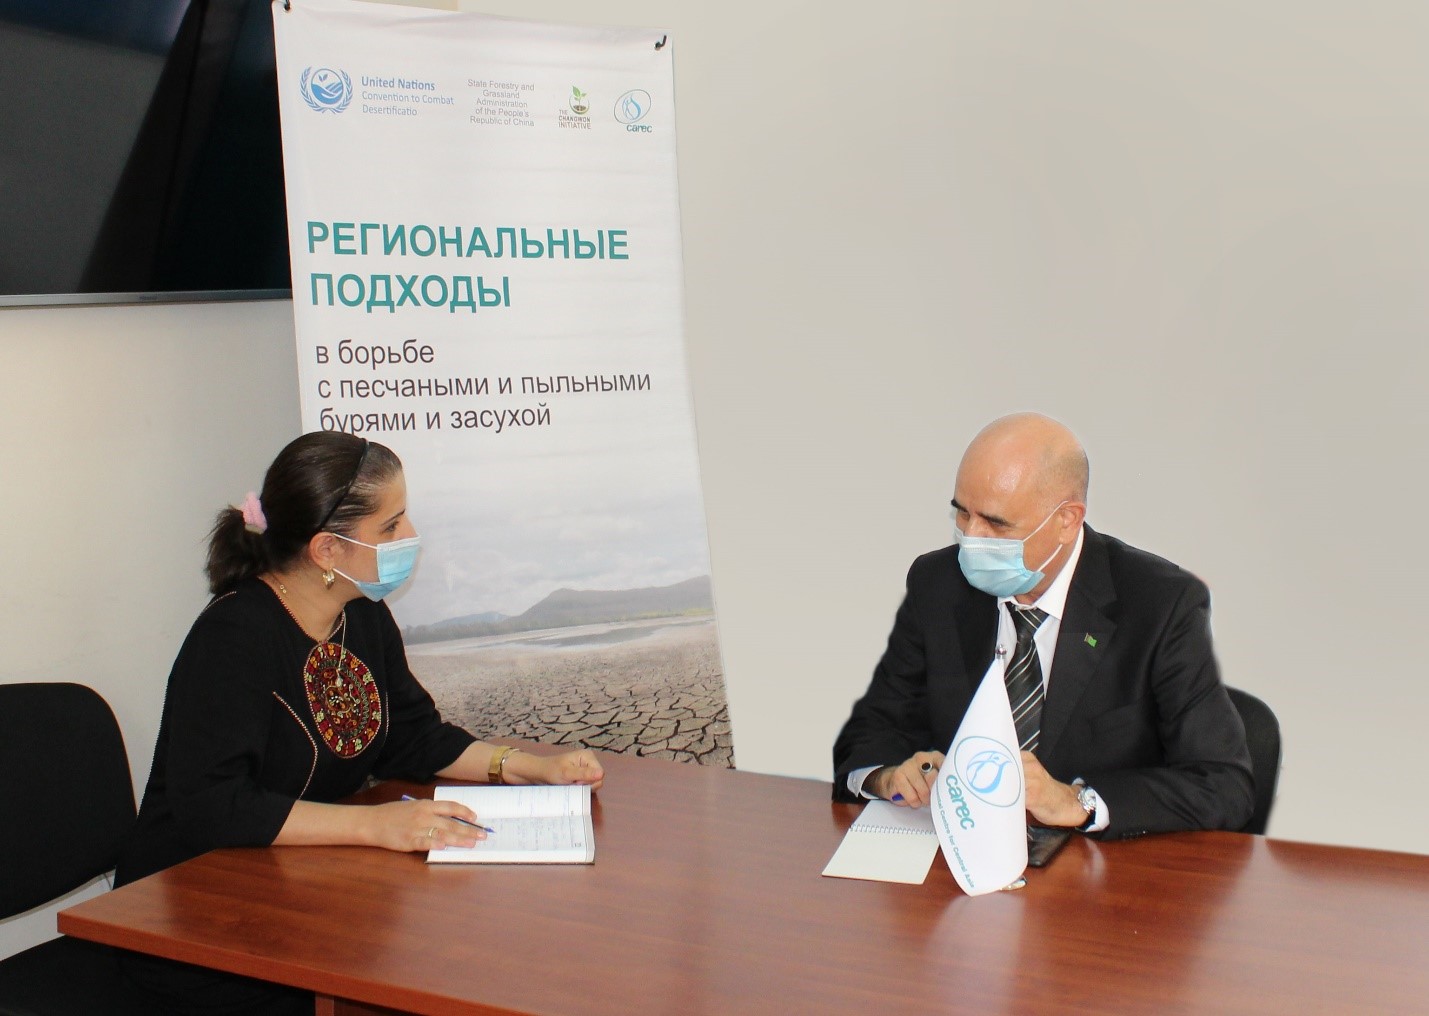 Состоялась координационная встреча в рамках реализации проекта «Региональные подходы в борьбе с песчаными и пыльными бурями и засухой» в Туркменистане